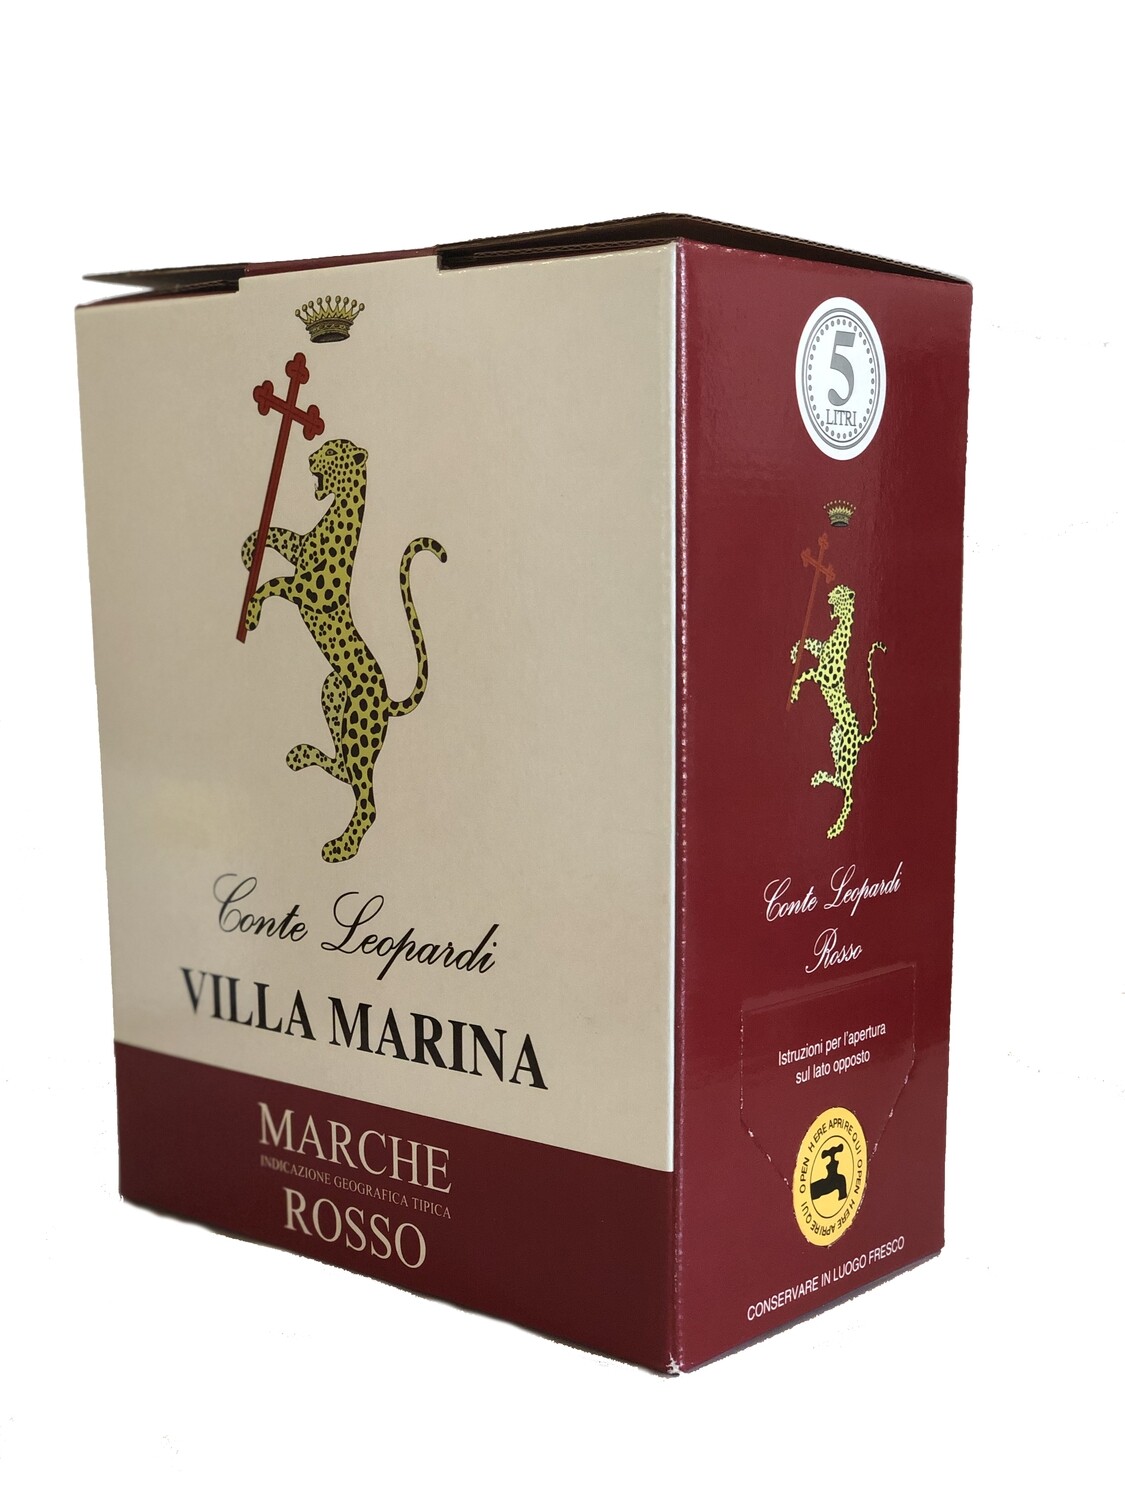 VILLA MARINA ROSSO
Marche IGT Rosso Bag in Box 5 Litri